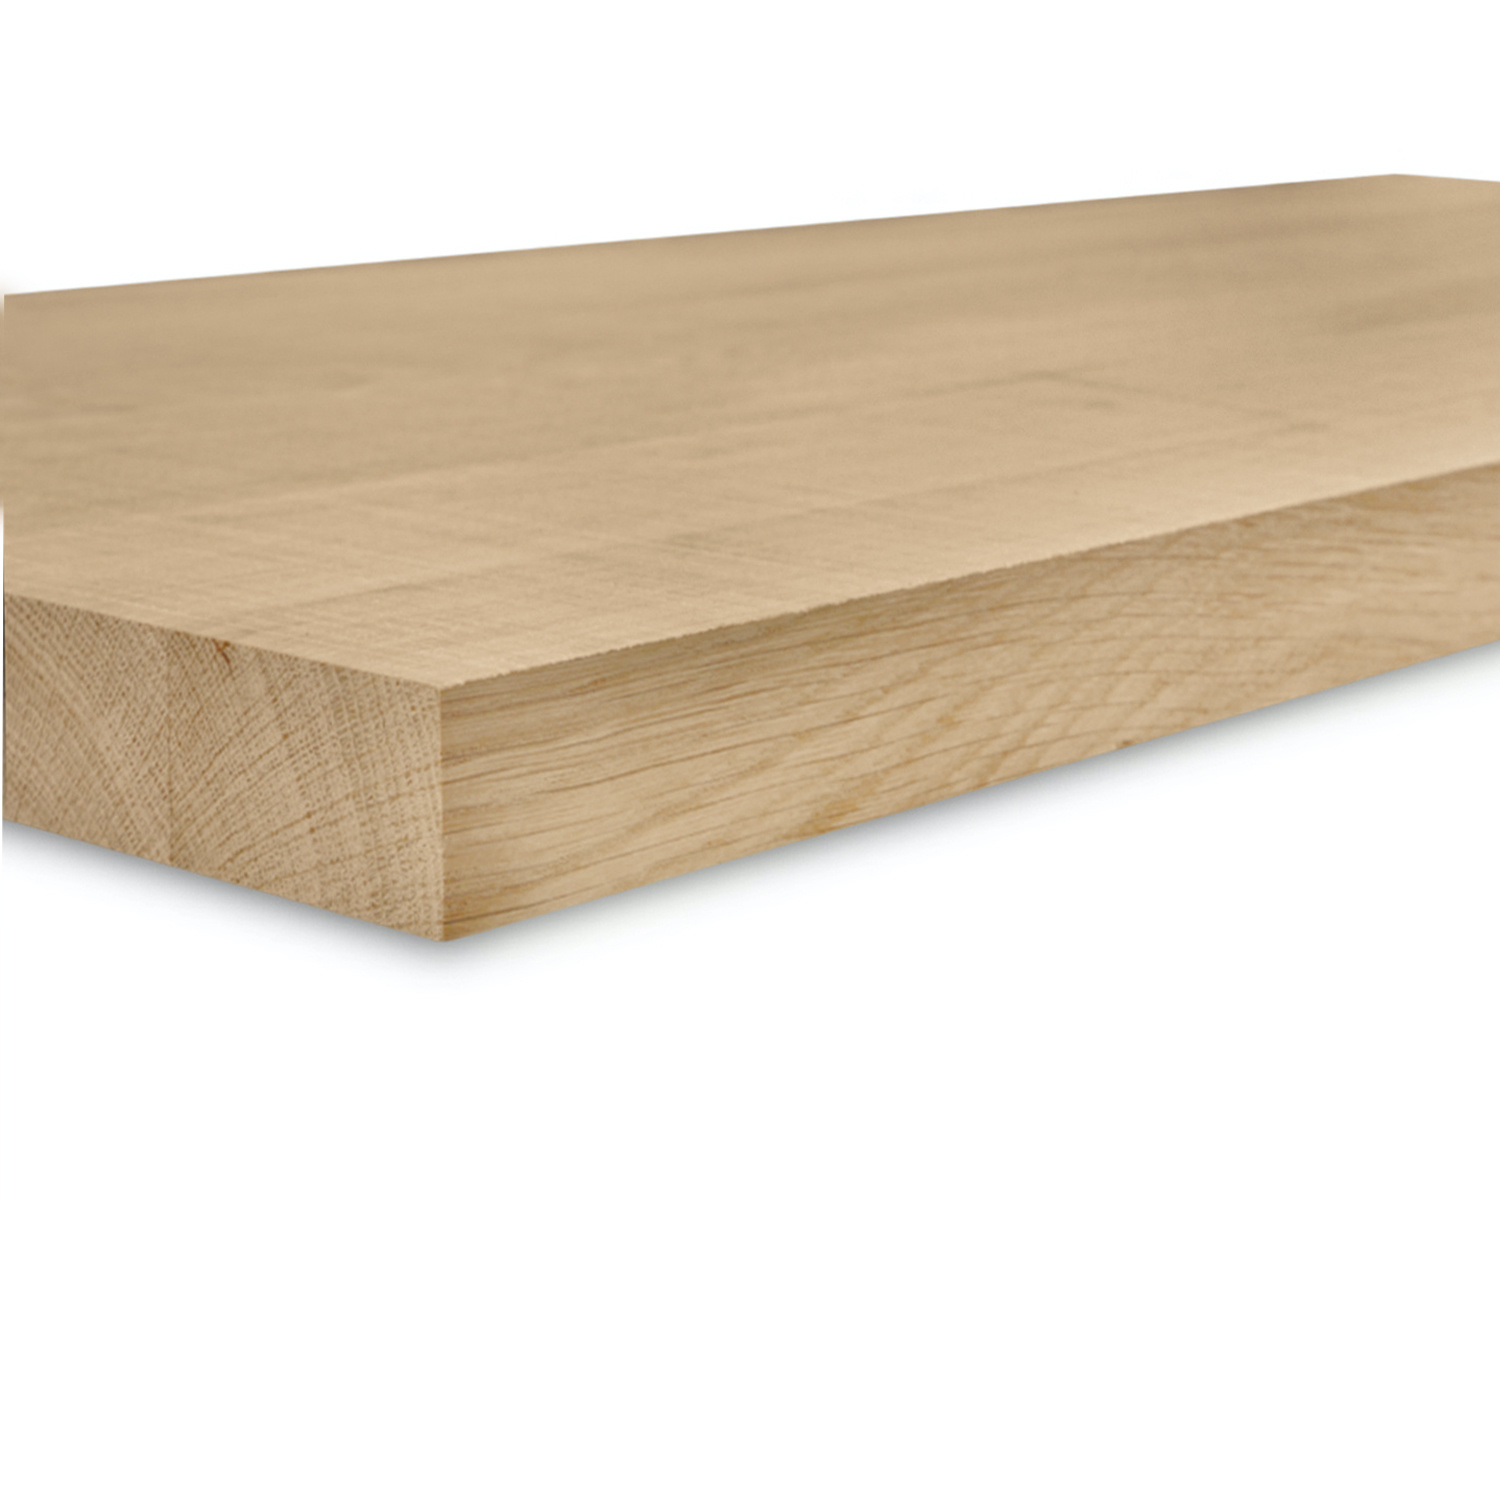  Leimholzplatte Eiche nach Maß - 4 cm dick  - Eichenholz A-Qualität - Sägerau Optik - Eiche Massivholzplatte - verleimt & künstlich getrocknet (HF 8-12%) - 15-120x20-300 cm